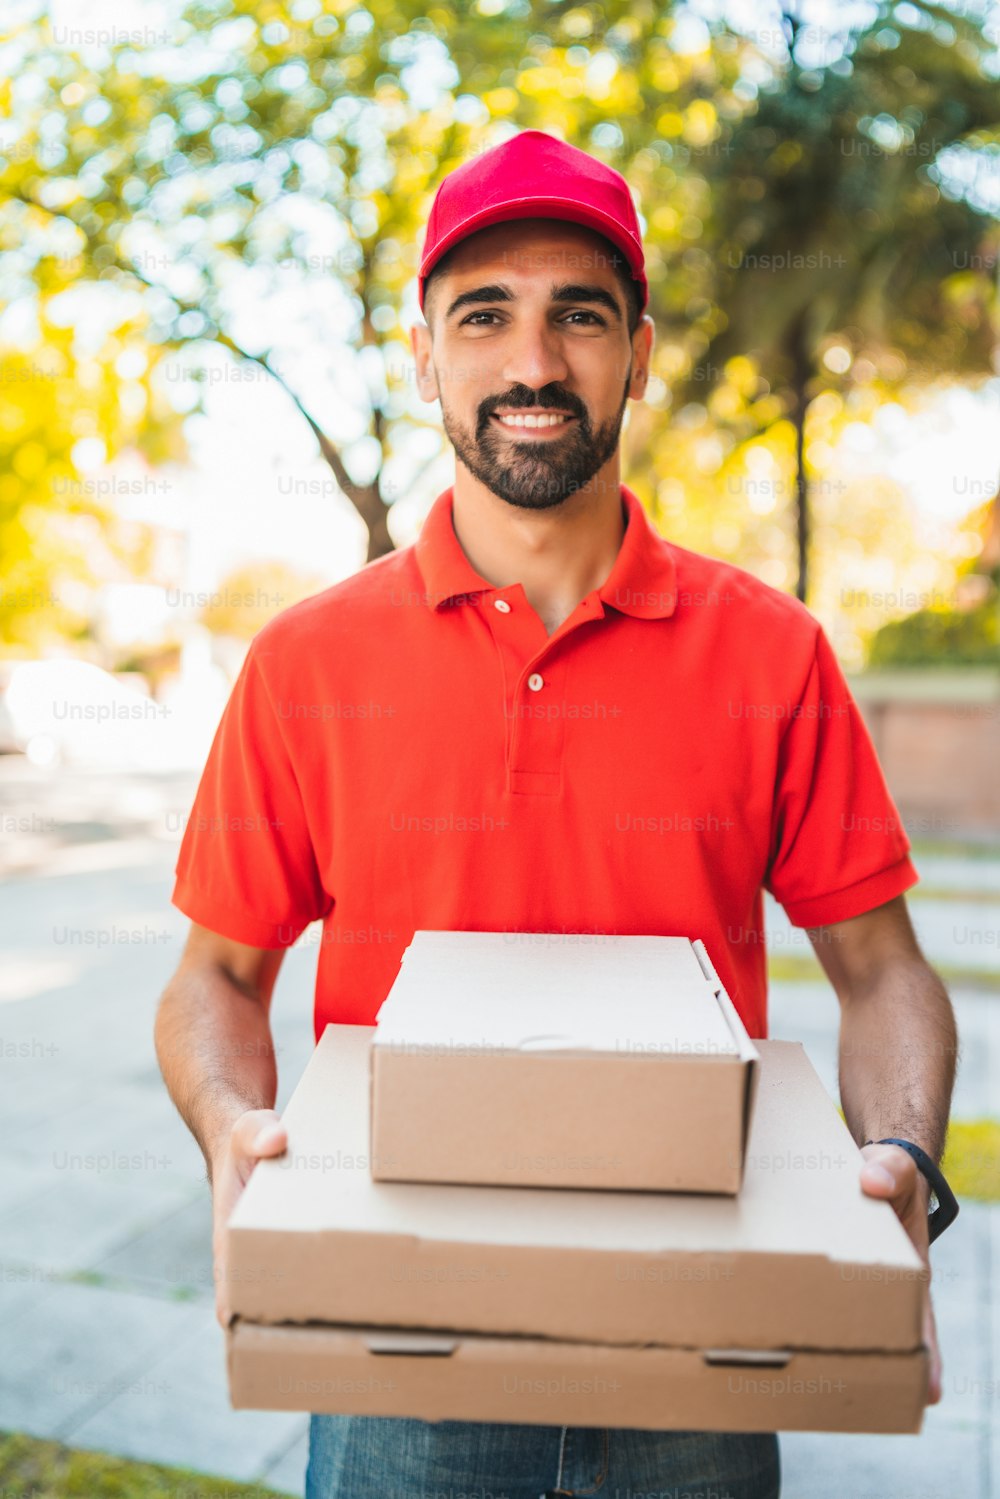 通りの屋外で段ボールのピザ箱を持つ配達人のポートレート。配送および配送サービスのコンセプト。